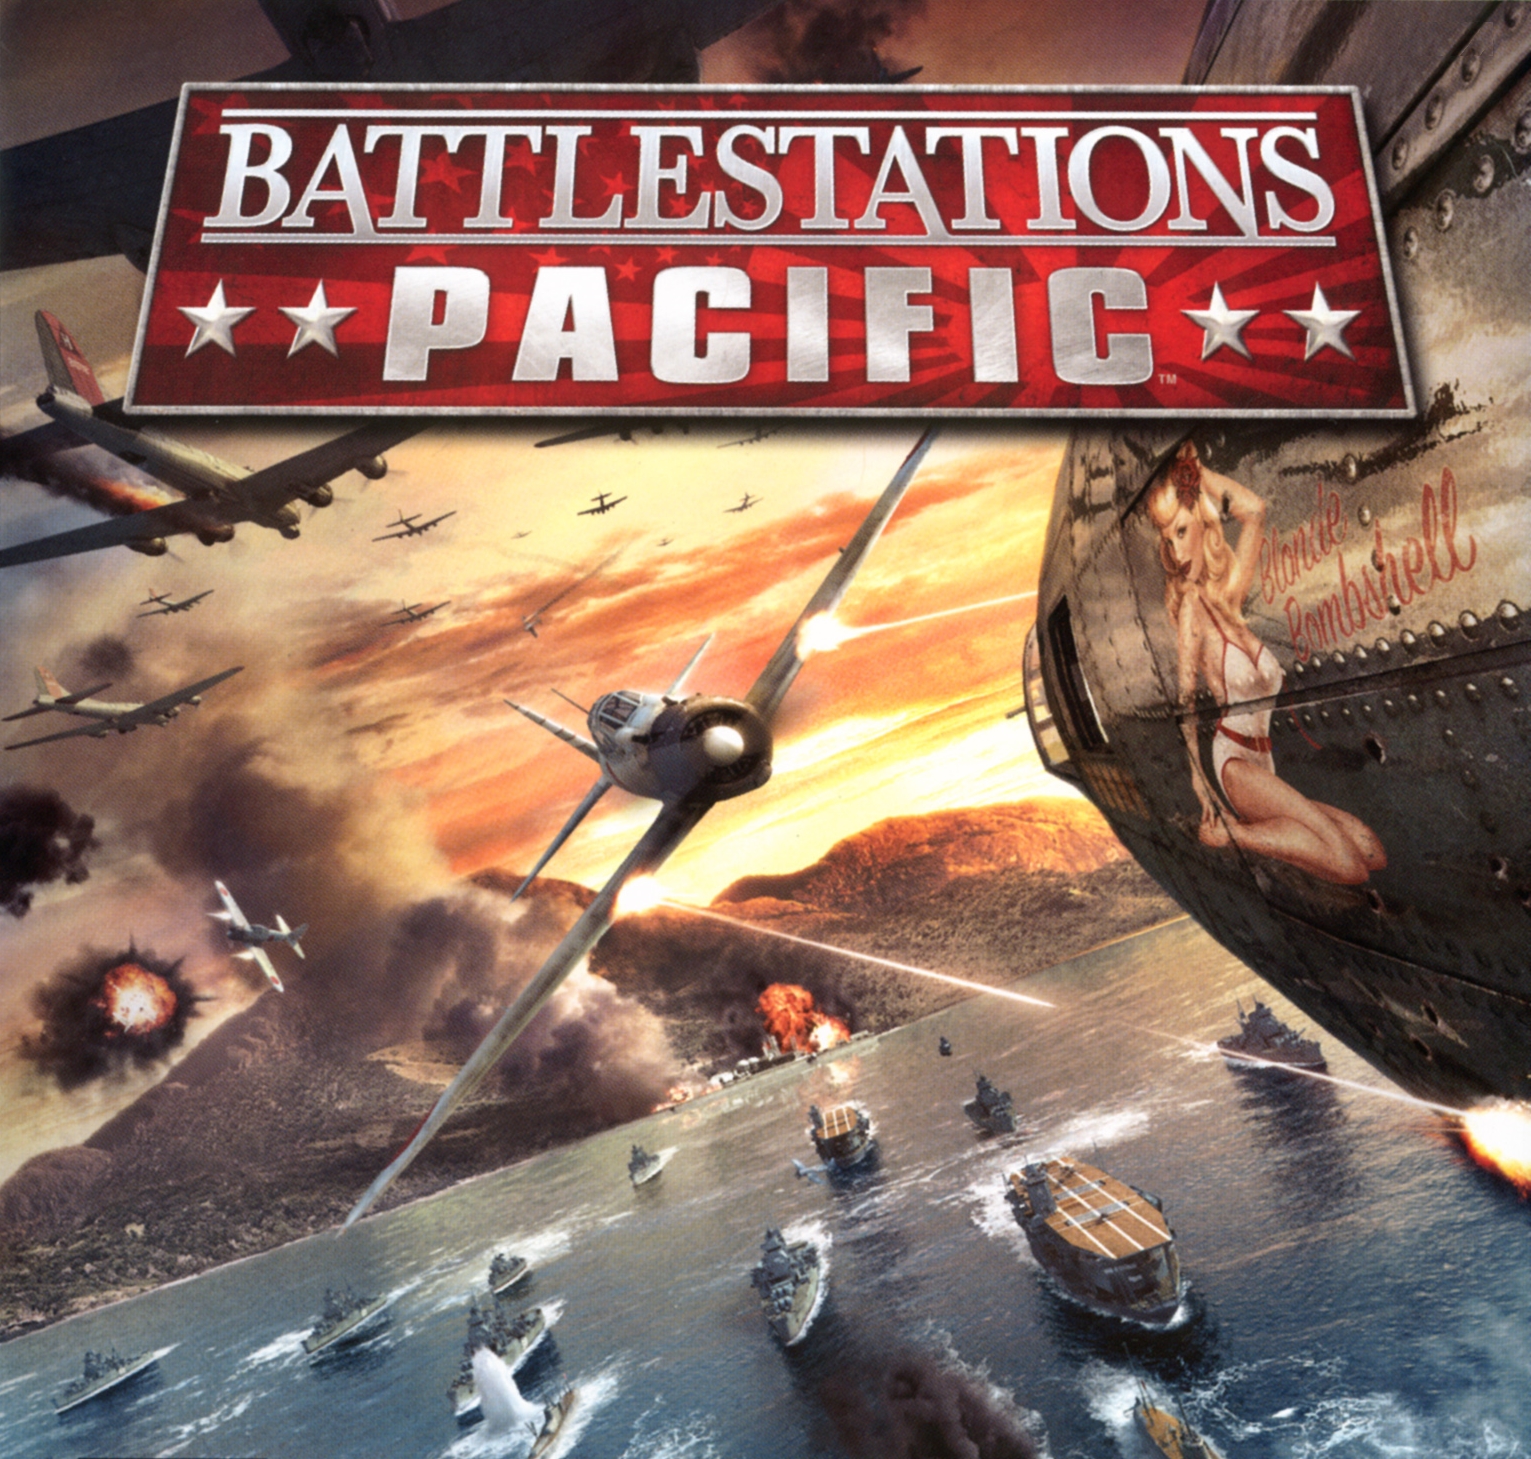 Battlestations: Pacific HD wallpapers, Desktop wallpaper - most viewed